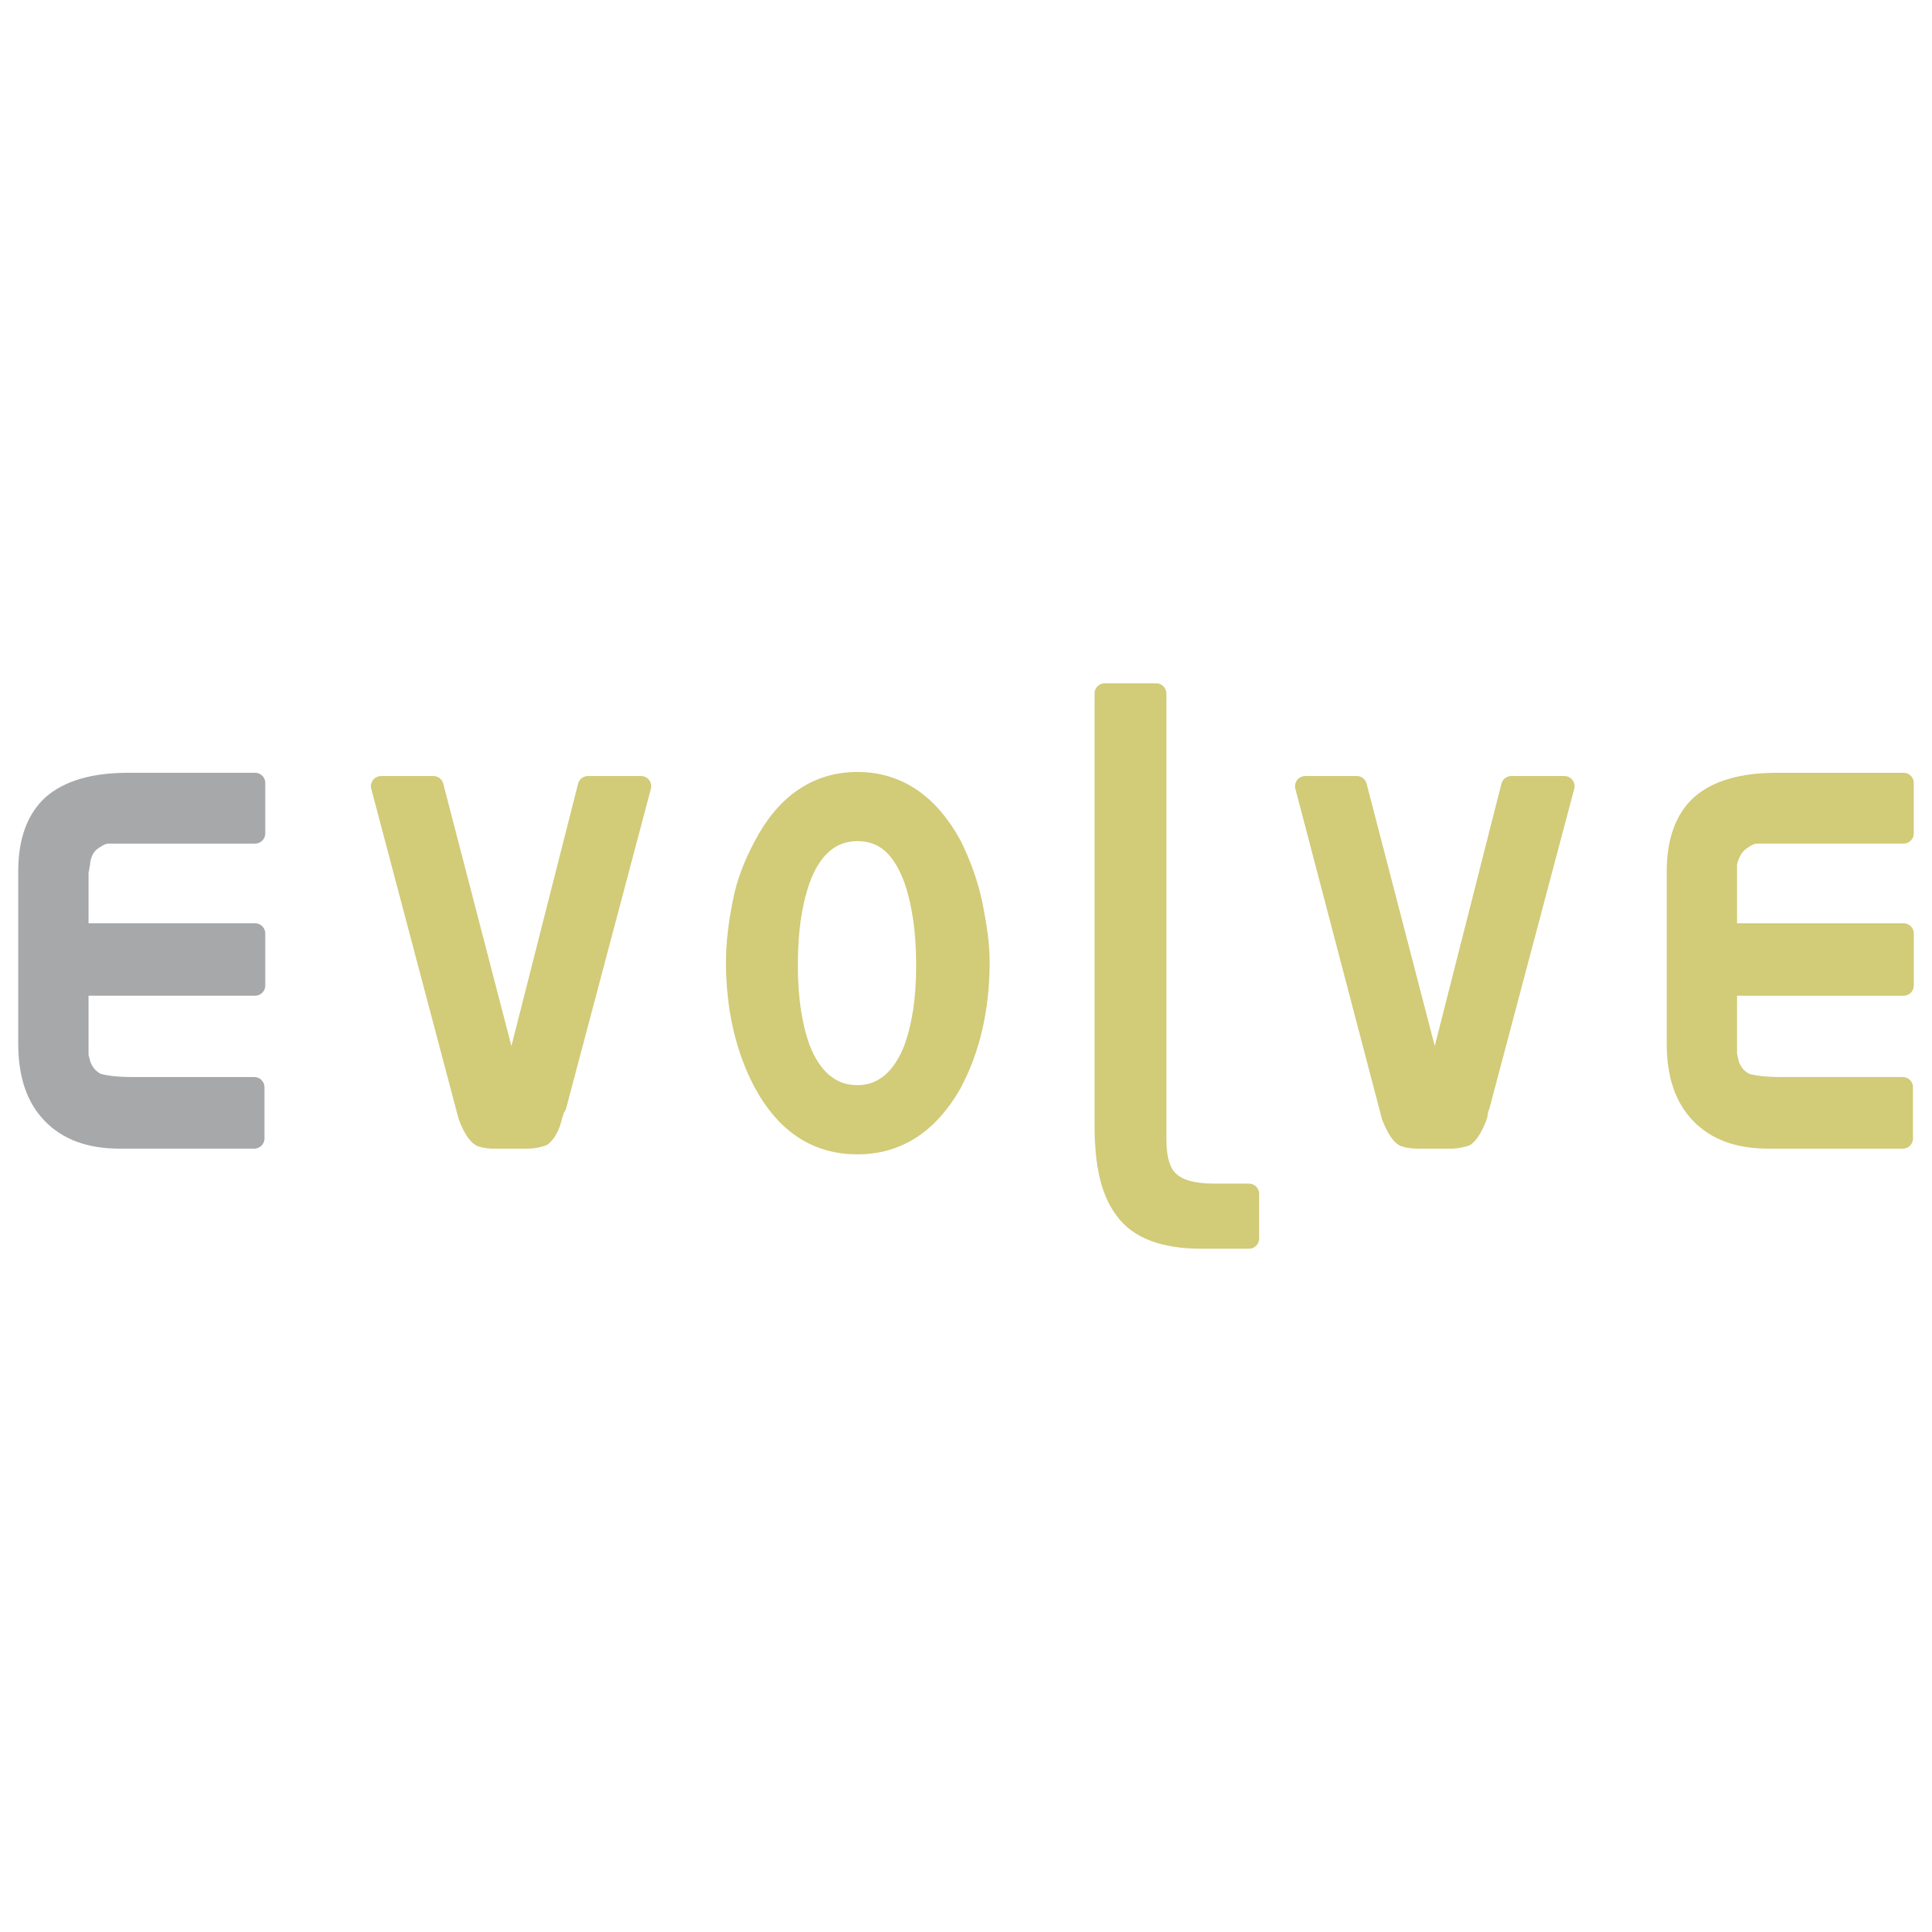 Evolve Logo - Evolve Logo PNG Transparent & SVG Vector